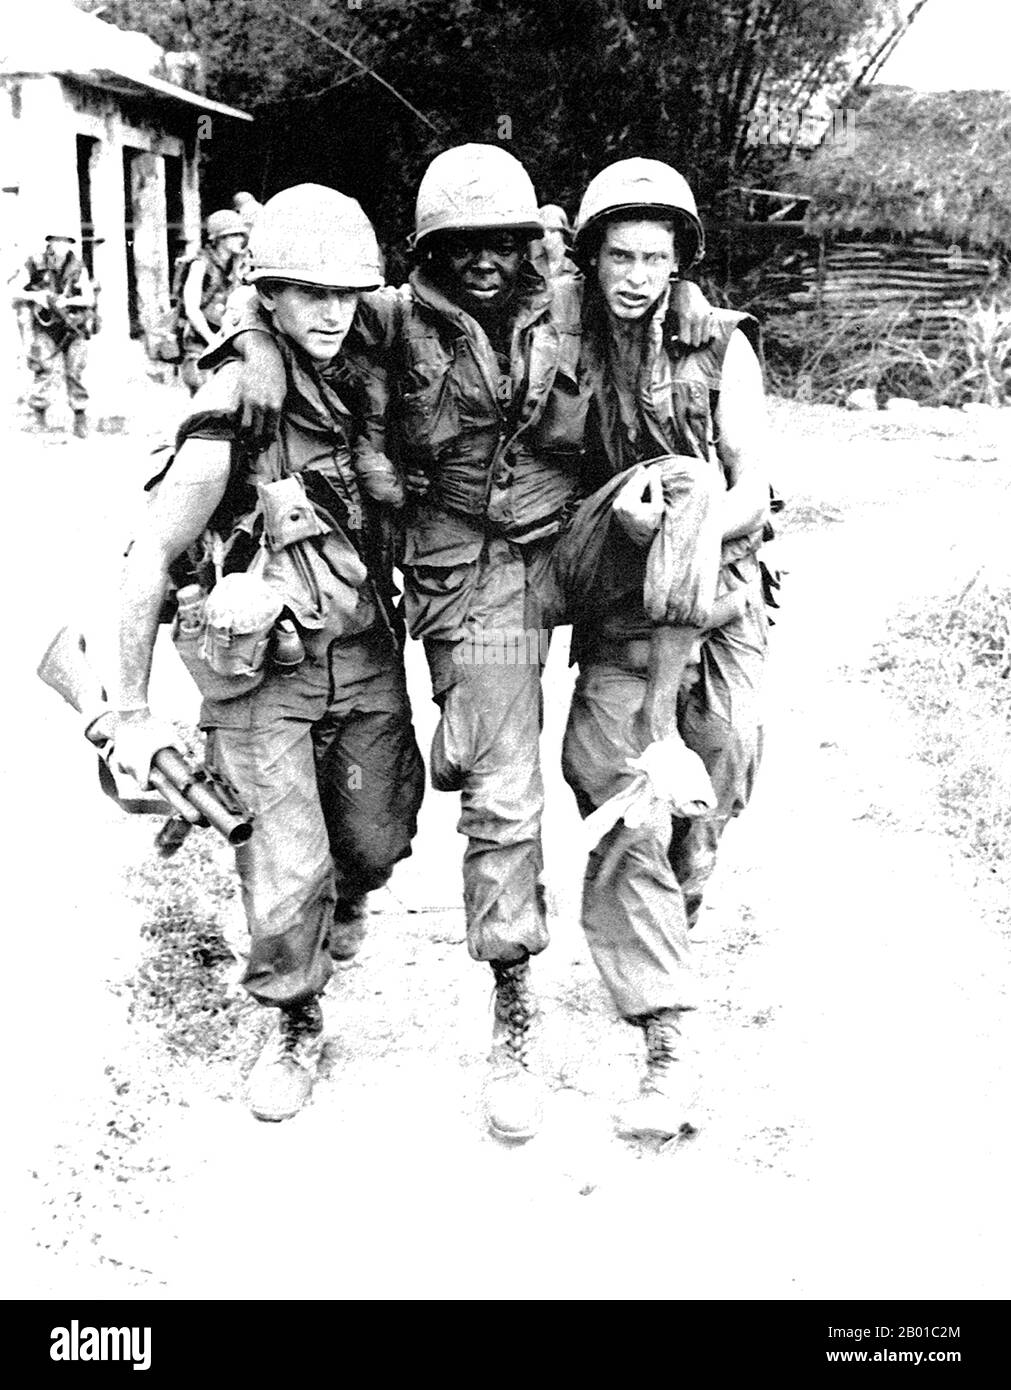 Vietnam: Dos soldados del ejército de EE.UU. Ayudando a un camarada herido en My Lai. Foto de Ronald L. Haeberle (dominio público), marzo de 6 1968. Soldados ESTADOUNIDENSES involucrados en la masacre de My Lai o Thảm sát Mỹ Lai (6 de marzo de 1868) en Vietnam central cuando 347 a 504 civiles vietnamitas desarmados fueron masacrados por una unidad de fuerzas estadounidenses bajo el mando del Teniente Segundo William Calley. Foto de stock